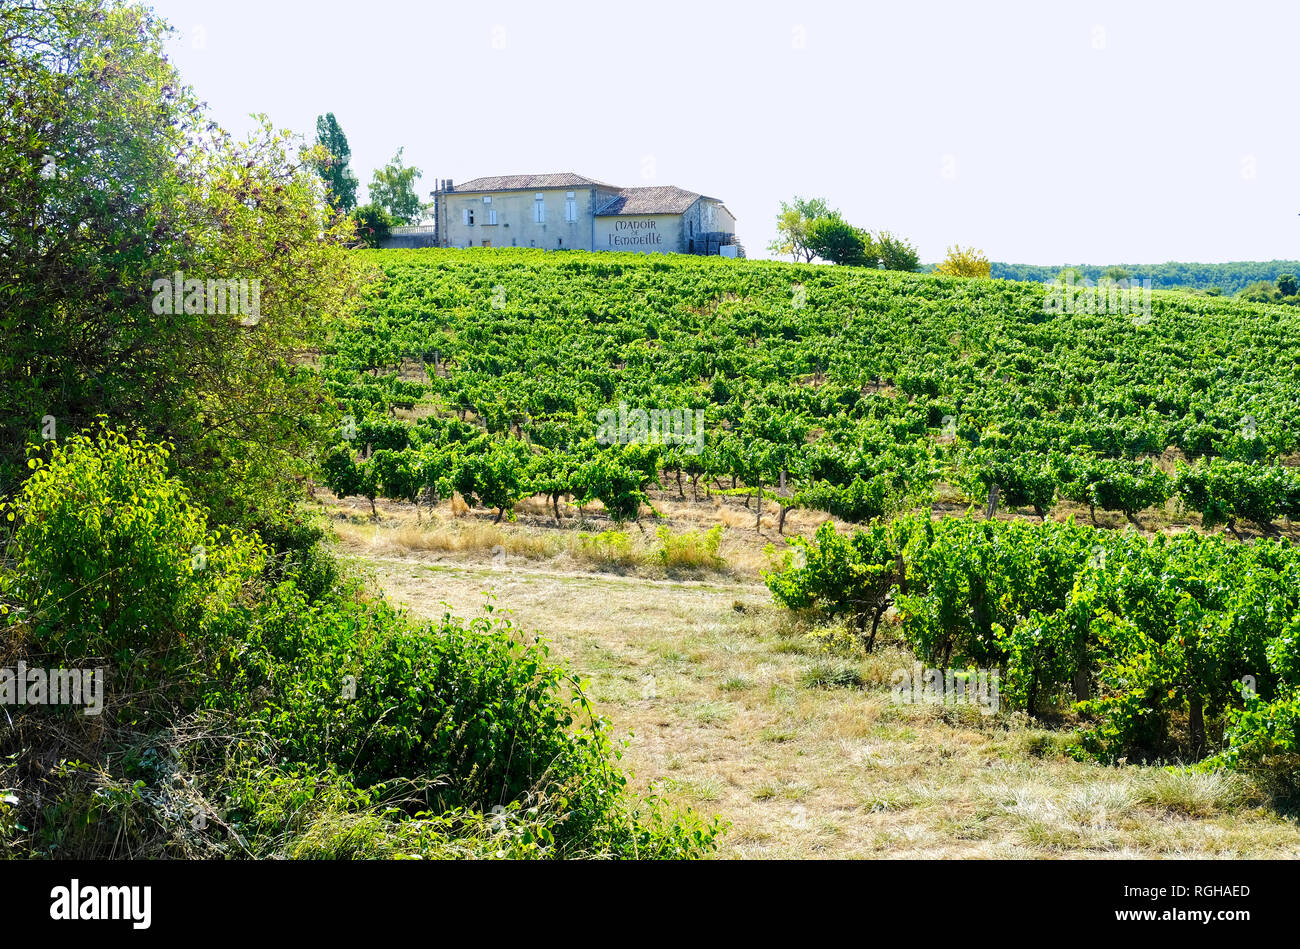 Campagnac, Francia - 12 agosto 2018: vinificazione in Francia. Manor di L'emmeille circondato con vigneto. Campagnac, Francia. Foto Stock